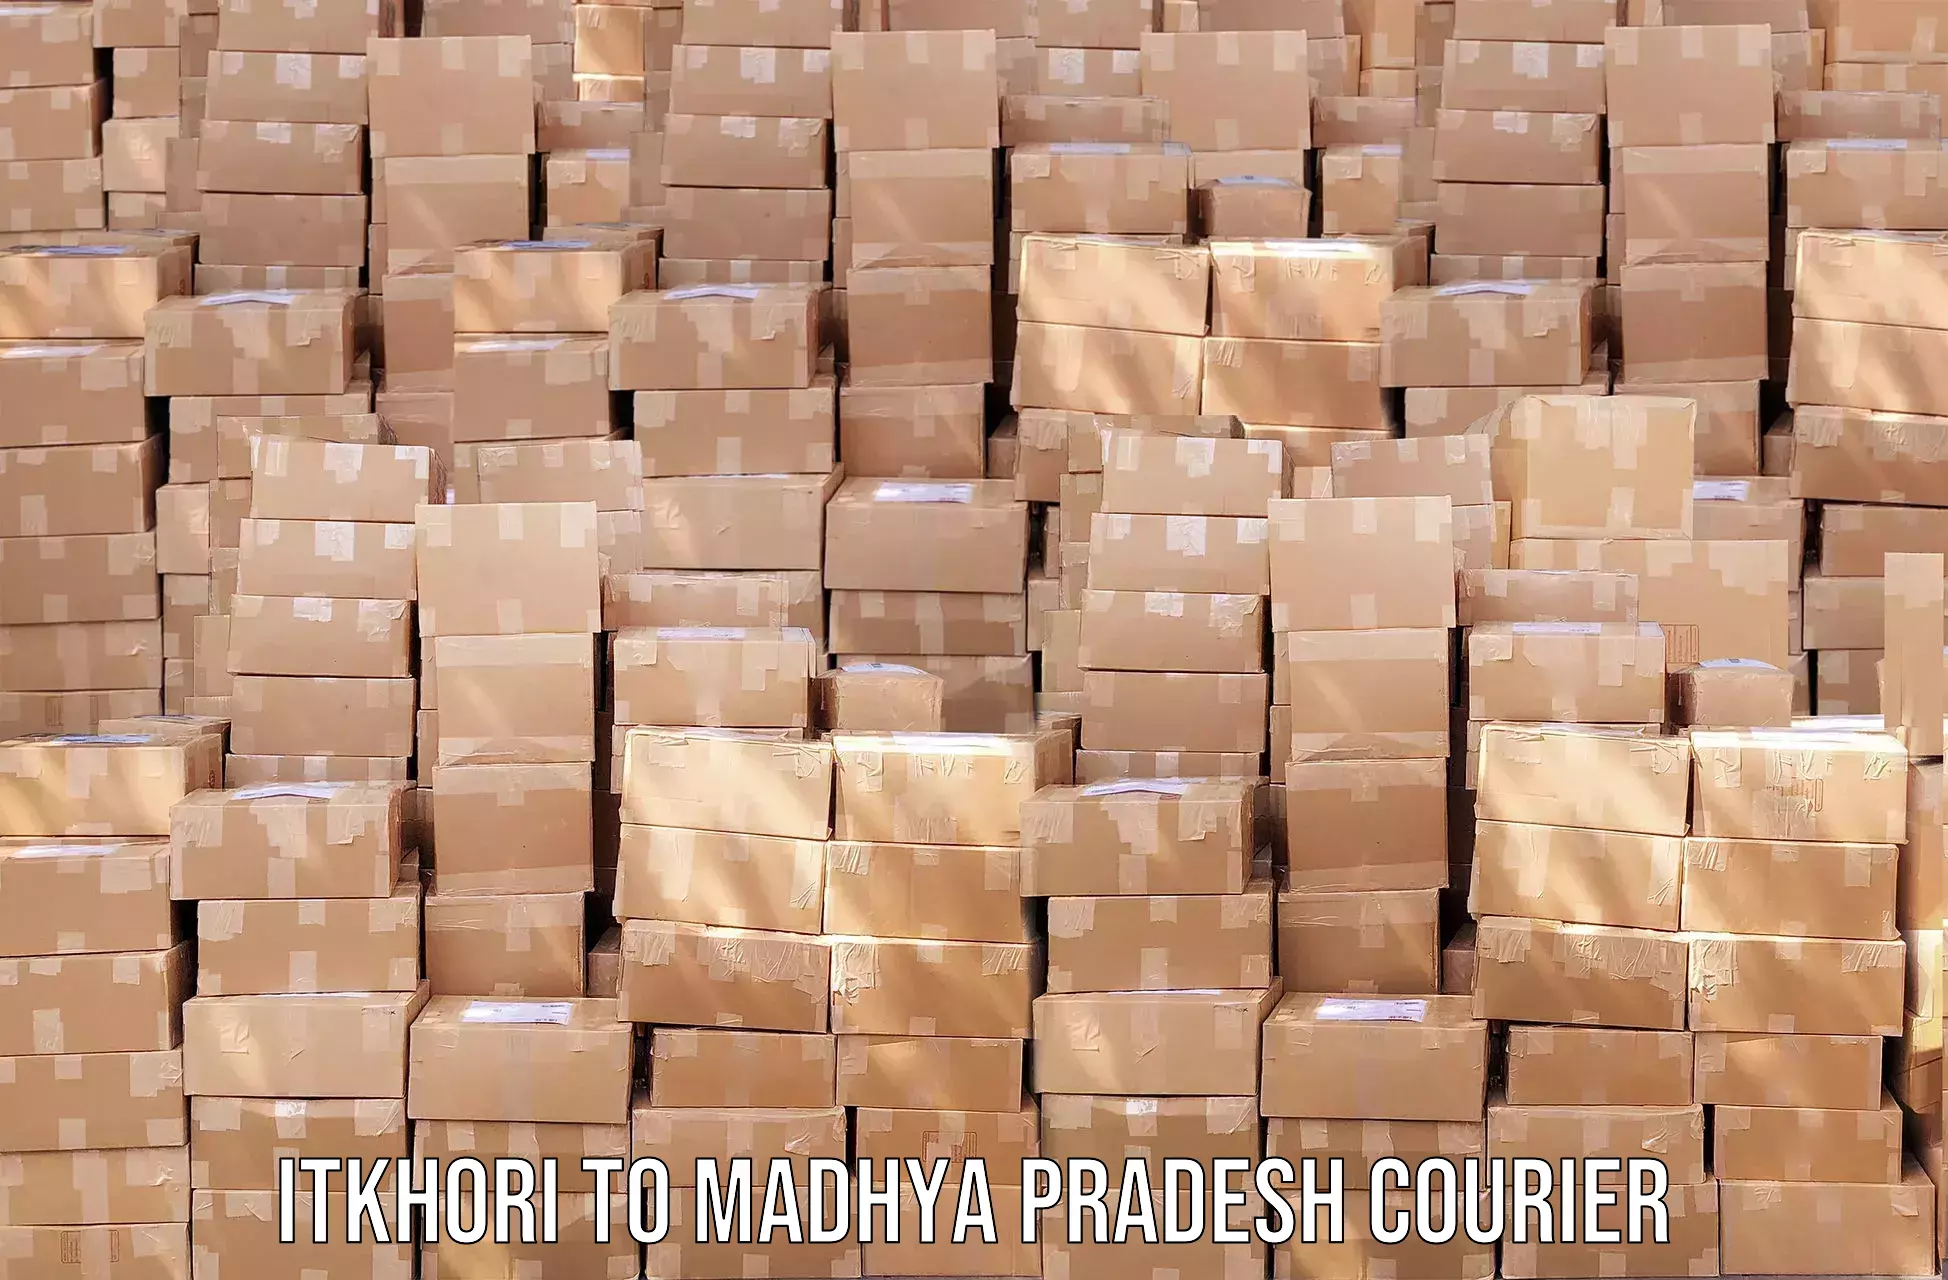 User-friendly courier app Itkhori to Madhya Pradesh